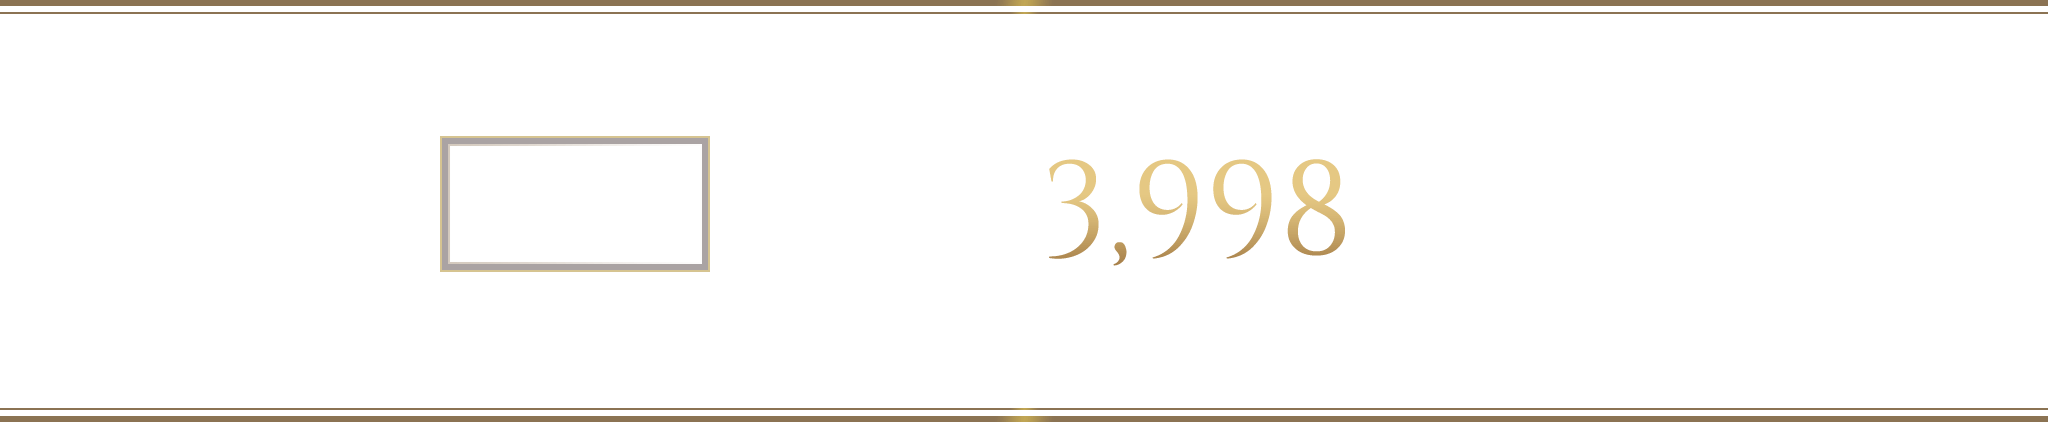 1LDK 住居専有面積 43.41㎡ （税込）3,998万円～